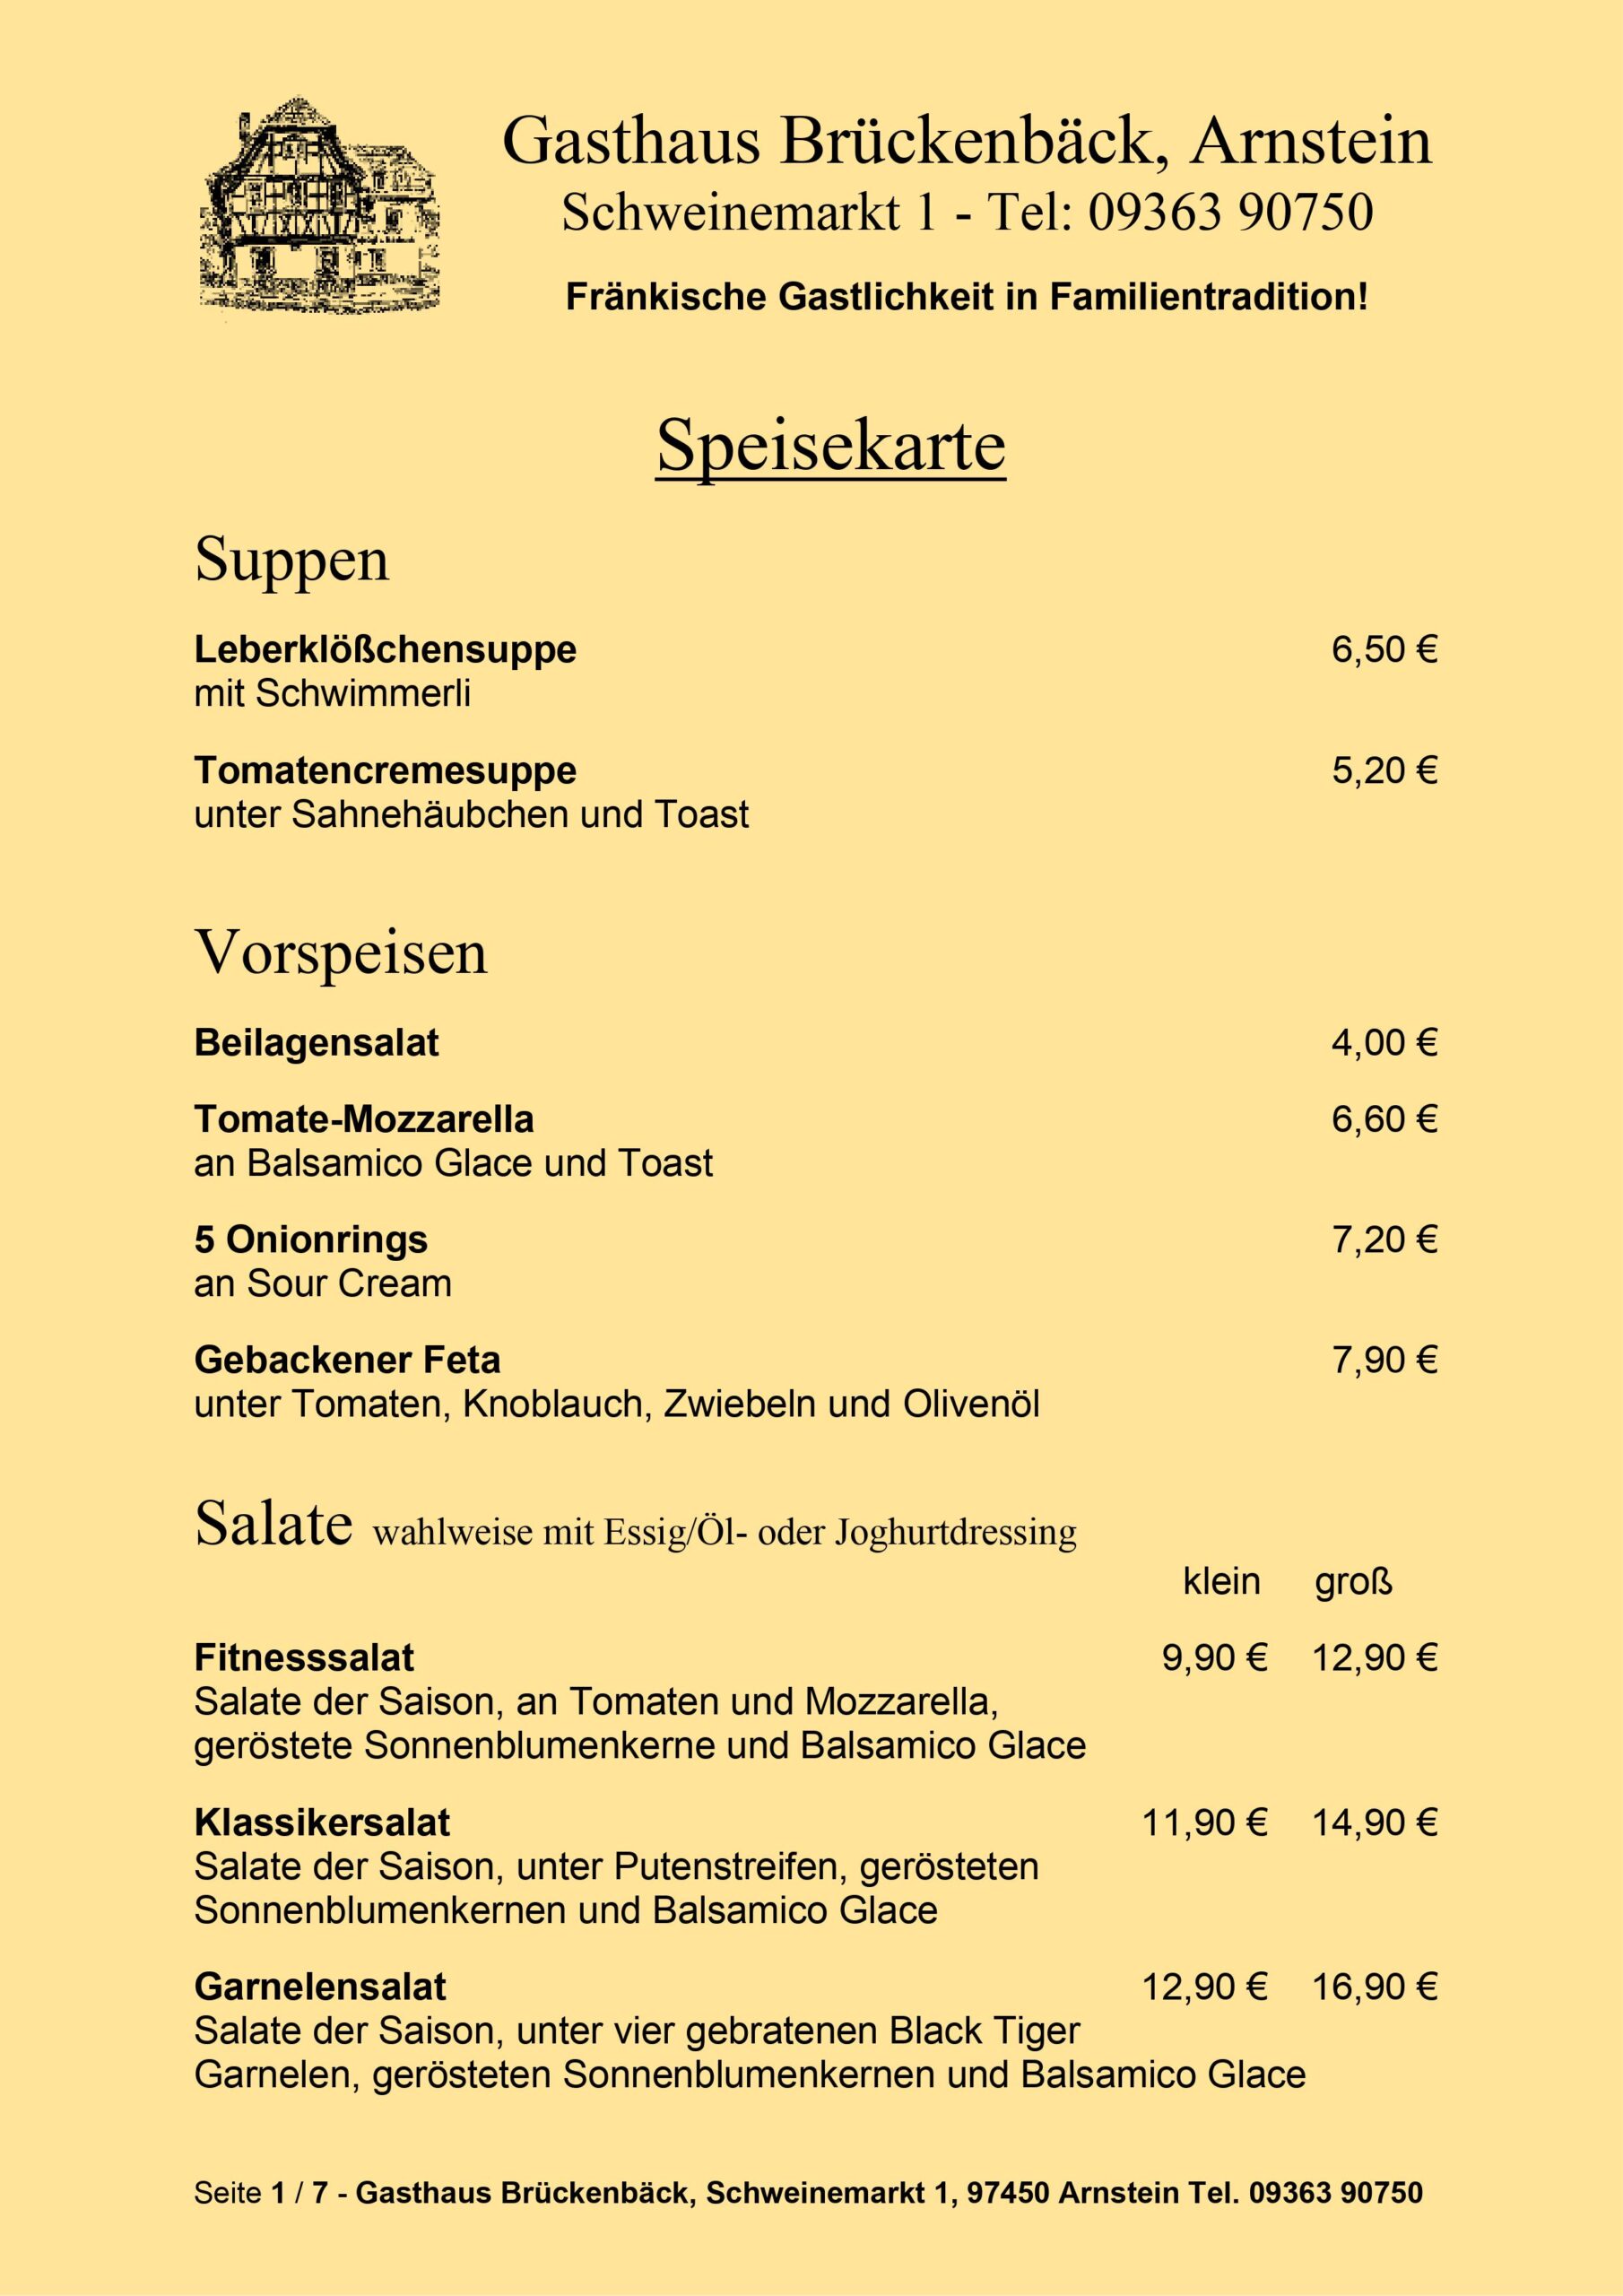 Gasthaus Brückenbäck - Speisekarte Seite 1/7